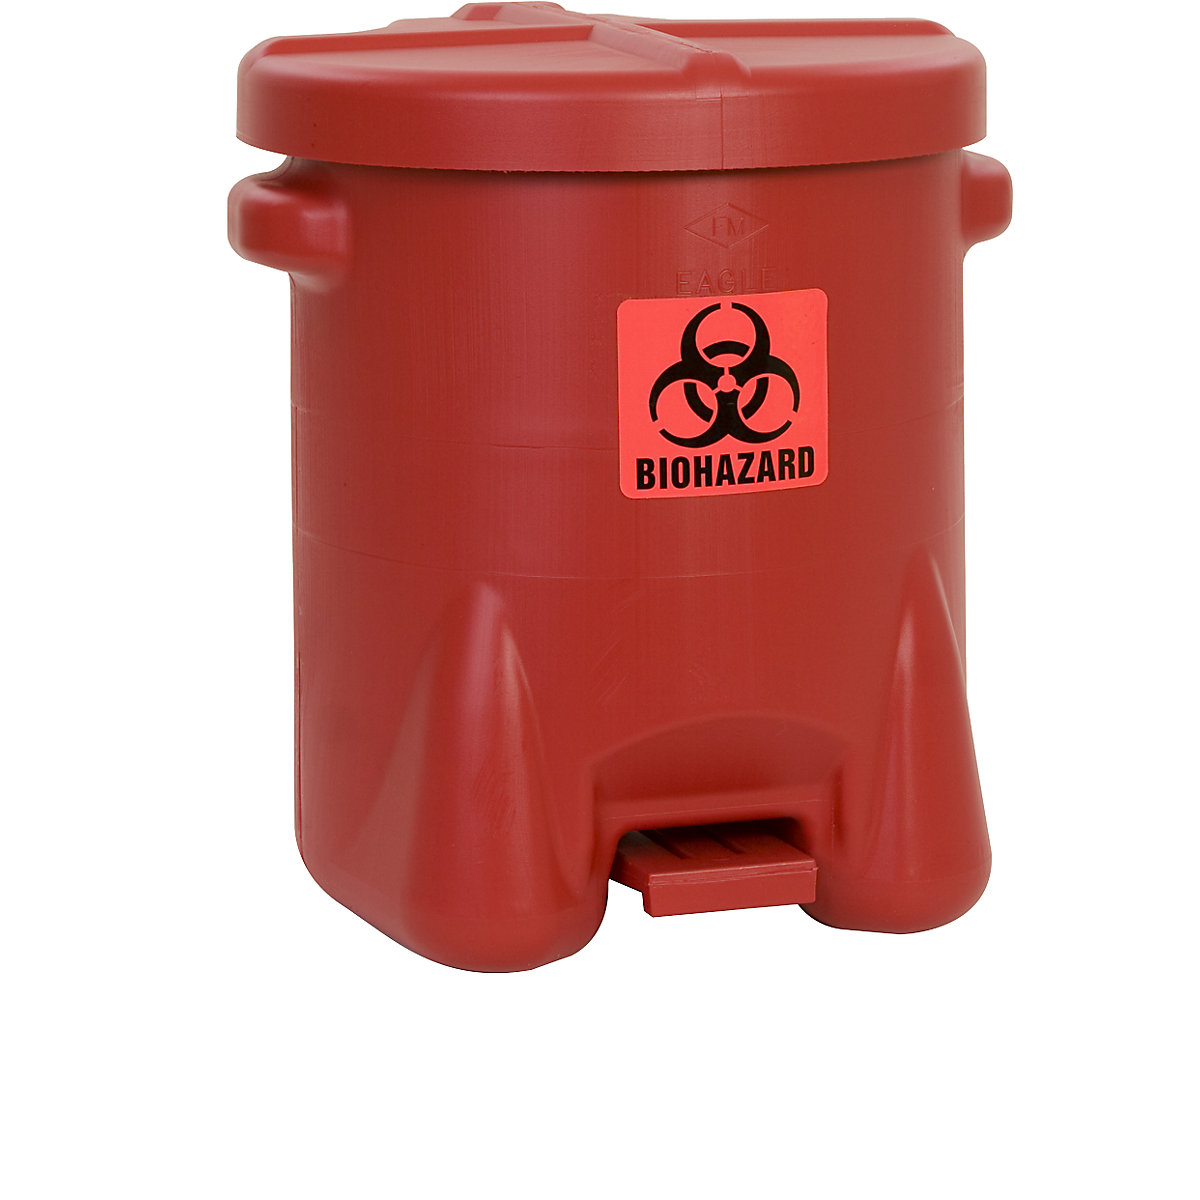 Bezpečnostná nádoba z PE plechu na likvidáciu biologických odpadov - Justrite